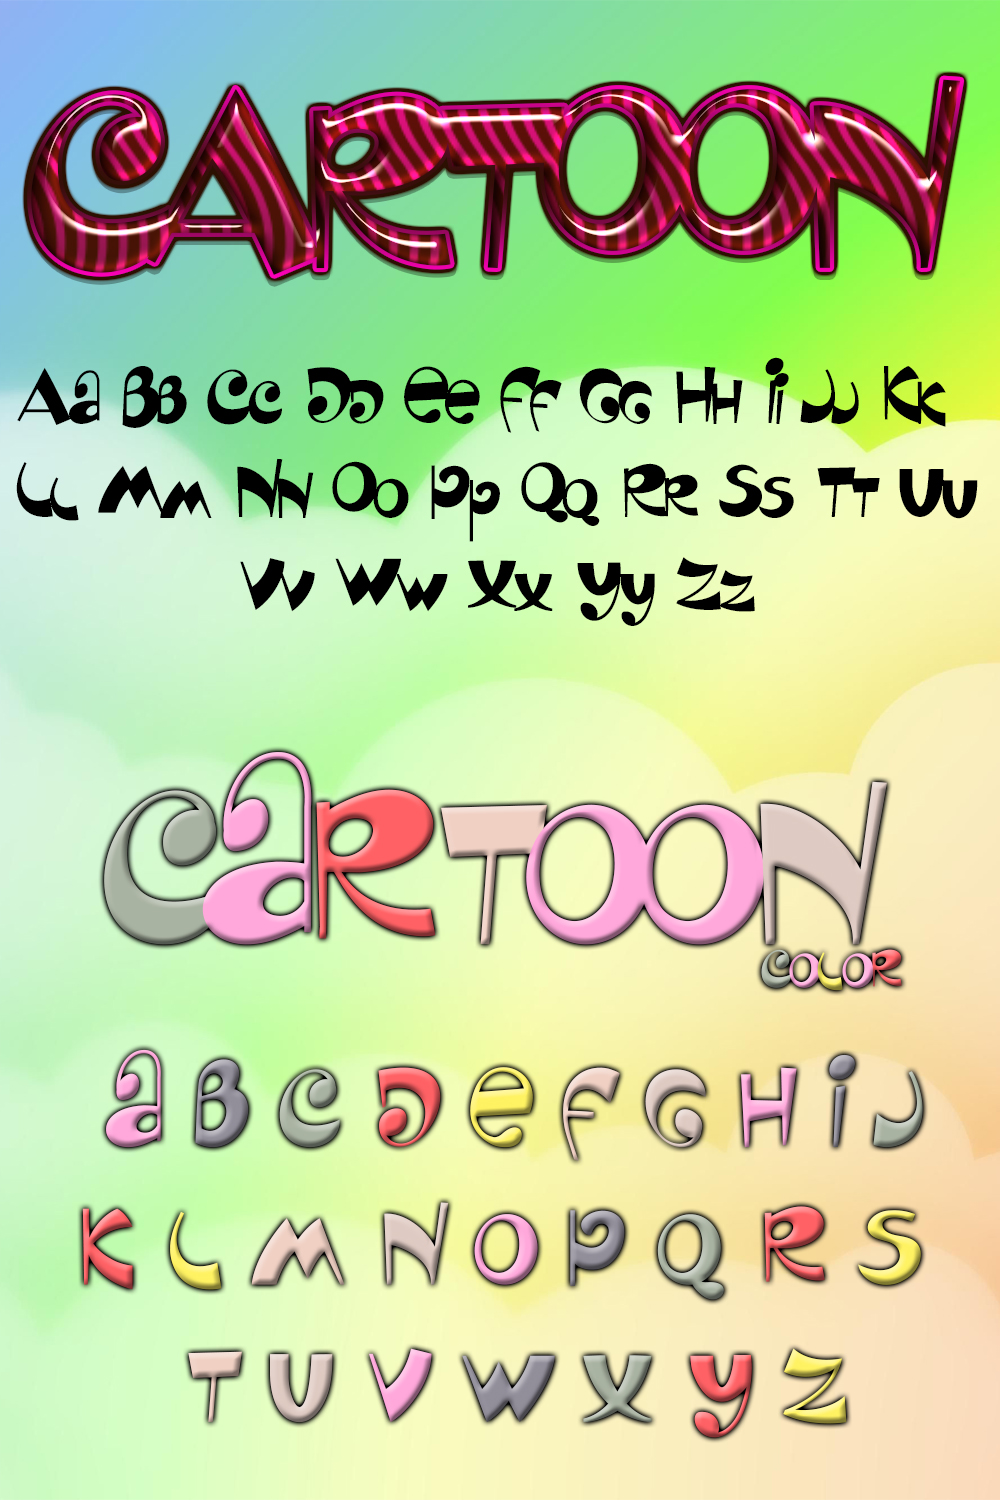 Cartoon font of pinterest.